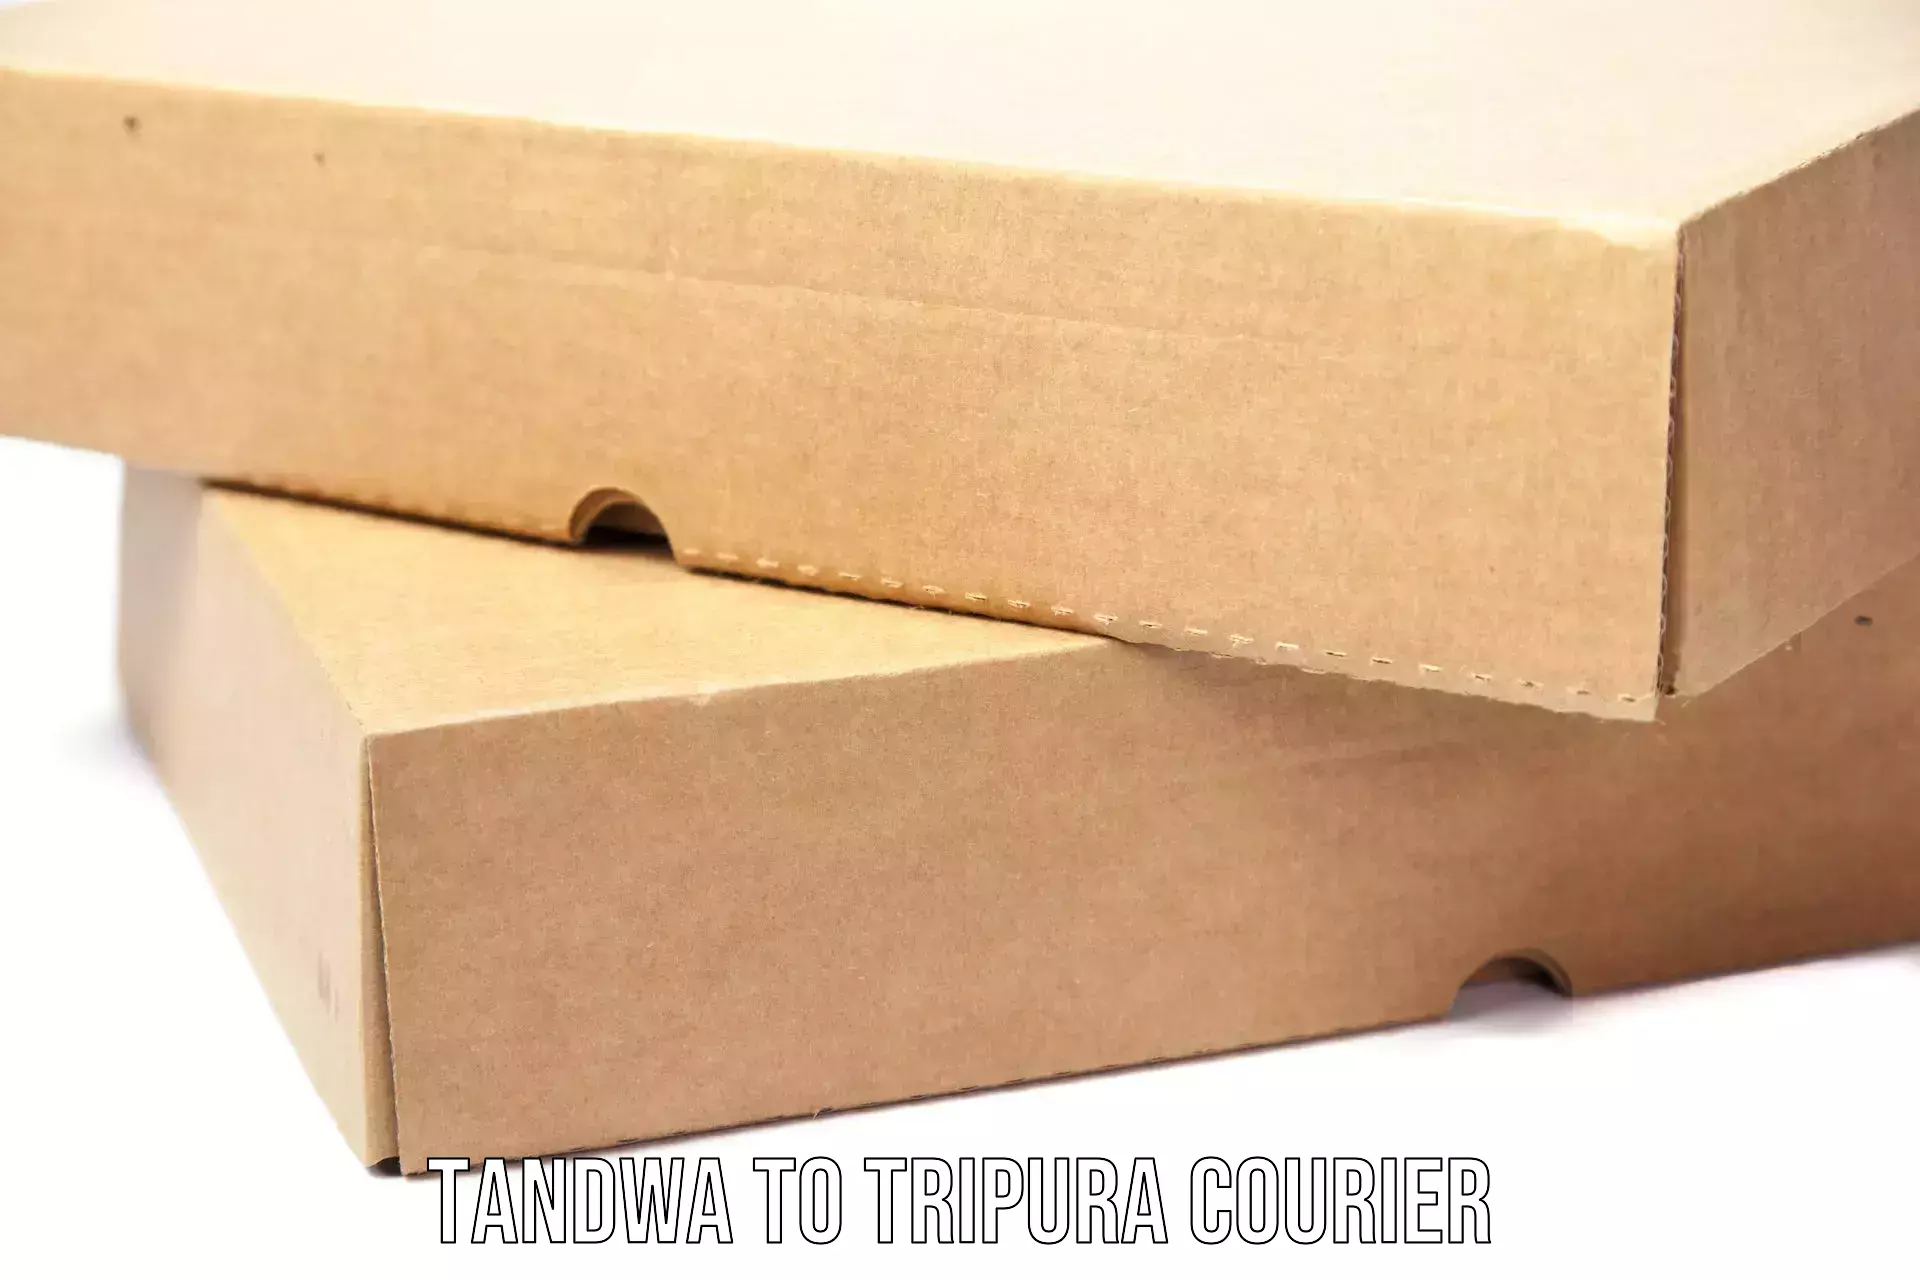 Specialized shipment handling Tandwa to Ambassa